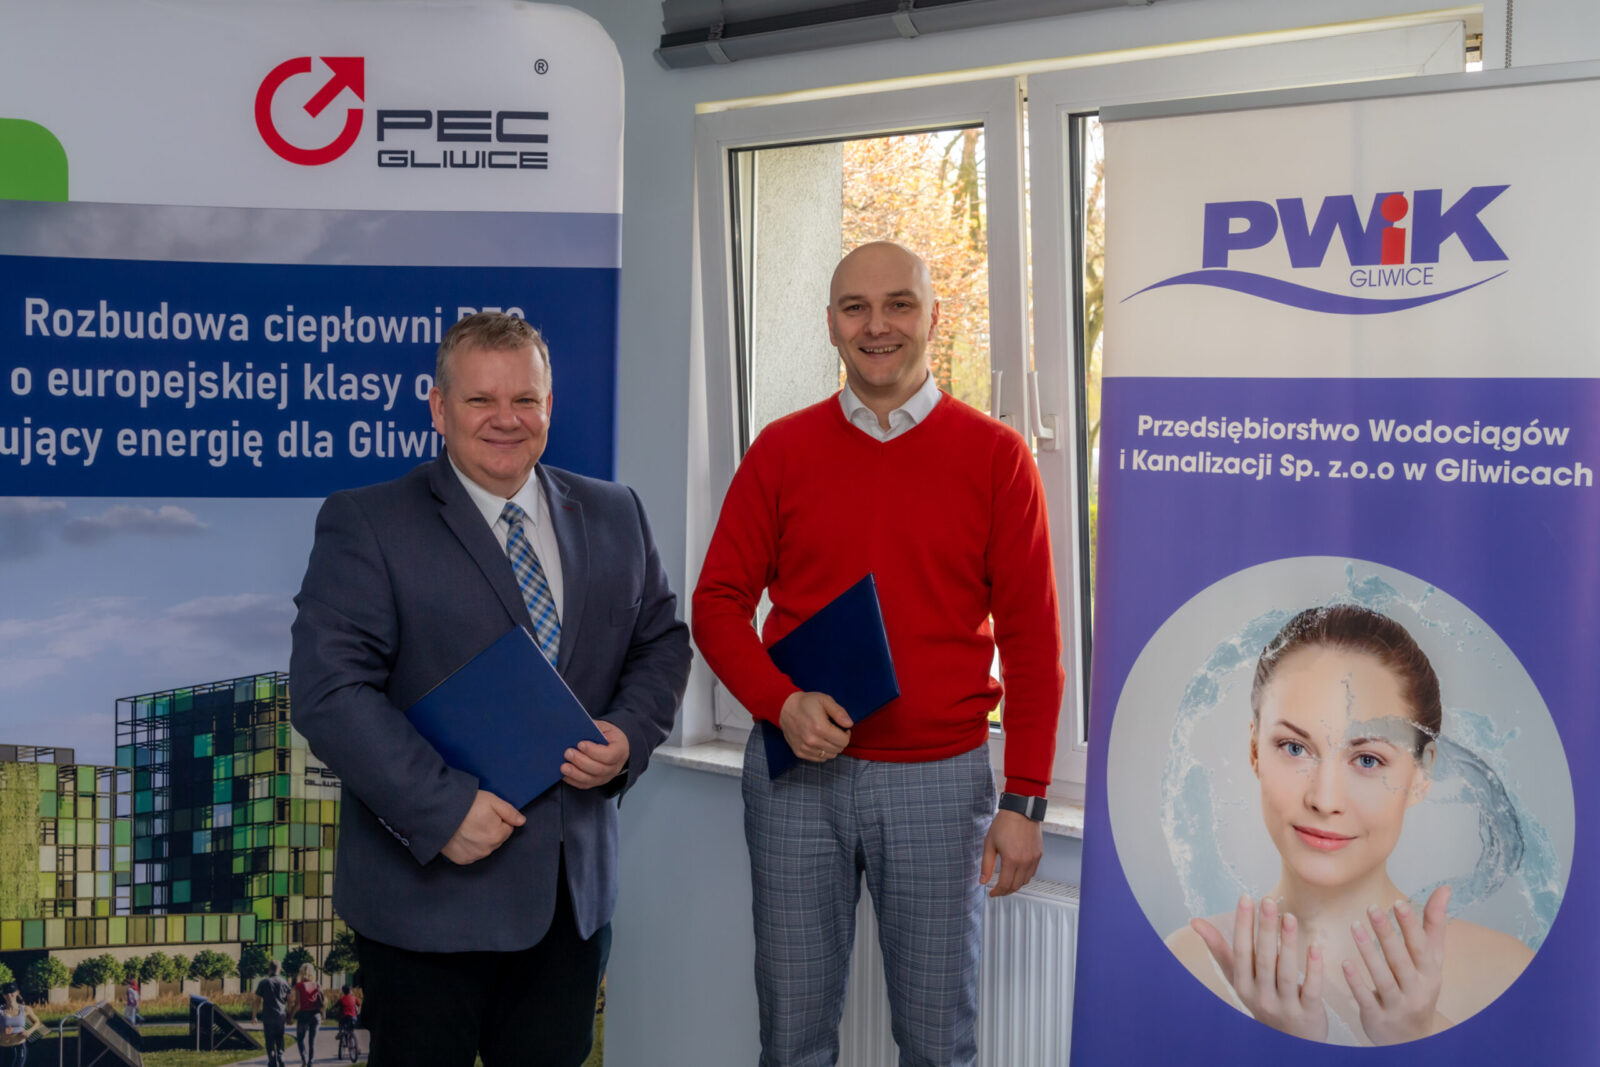 Porozumienie podpisali: Adam Ciekański, prezes PWiK Gliwice oraz Krzysztof Szaliński, prezes PEC Gliwice